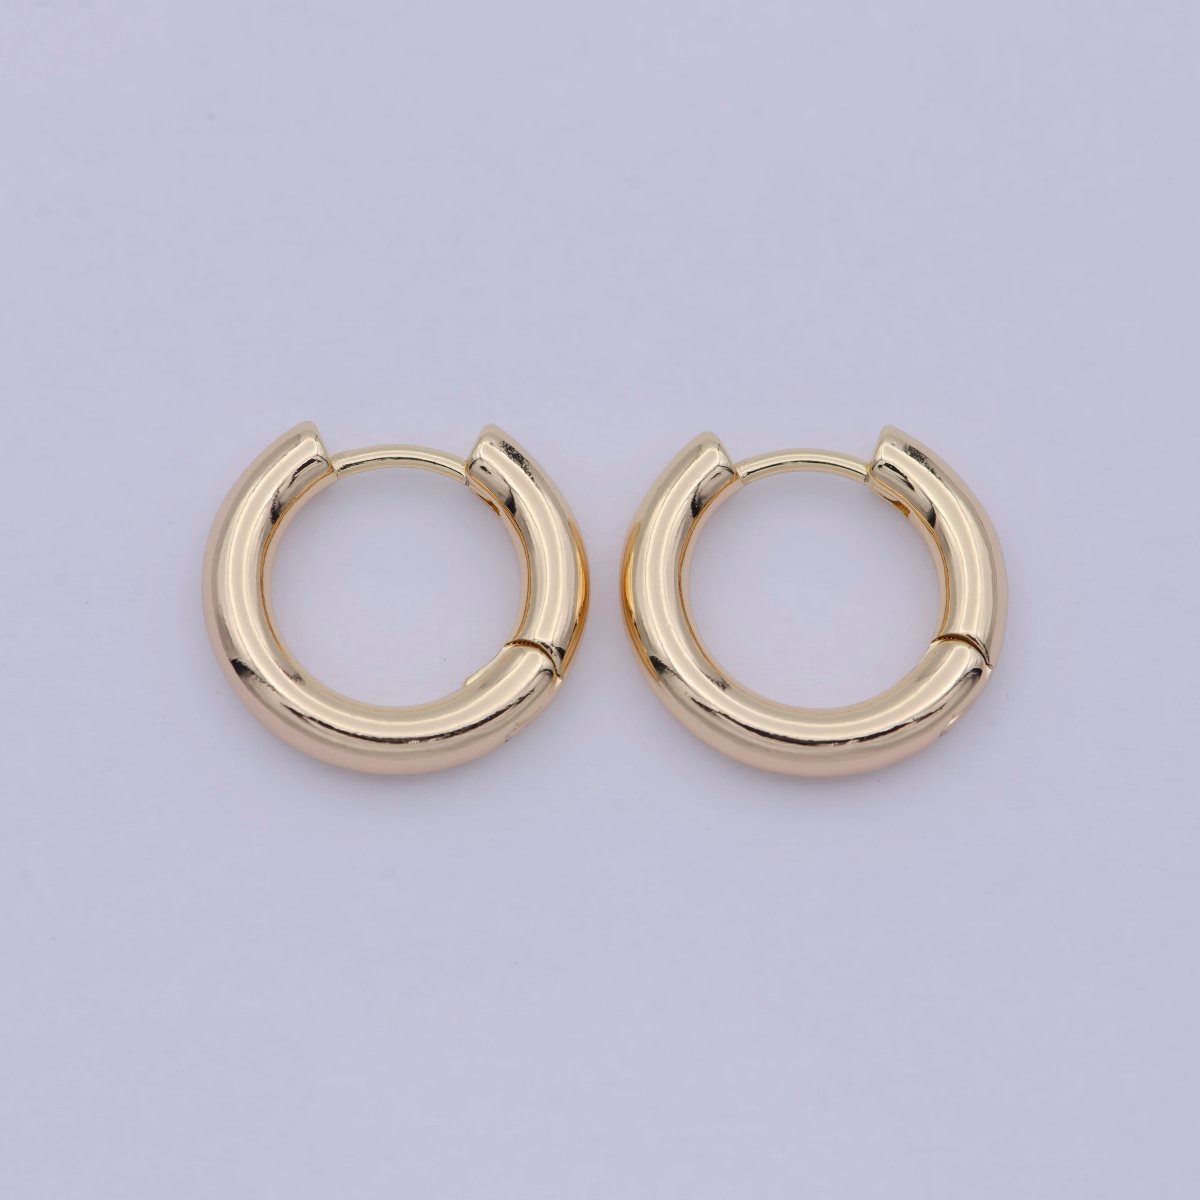 18k Gold Filled Thin Mini Ear Huggie Hoop Earrings, GOLD cartilage hoops Earring Hypoallergenic T-242 - DLUXCA